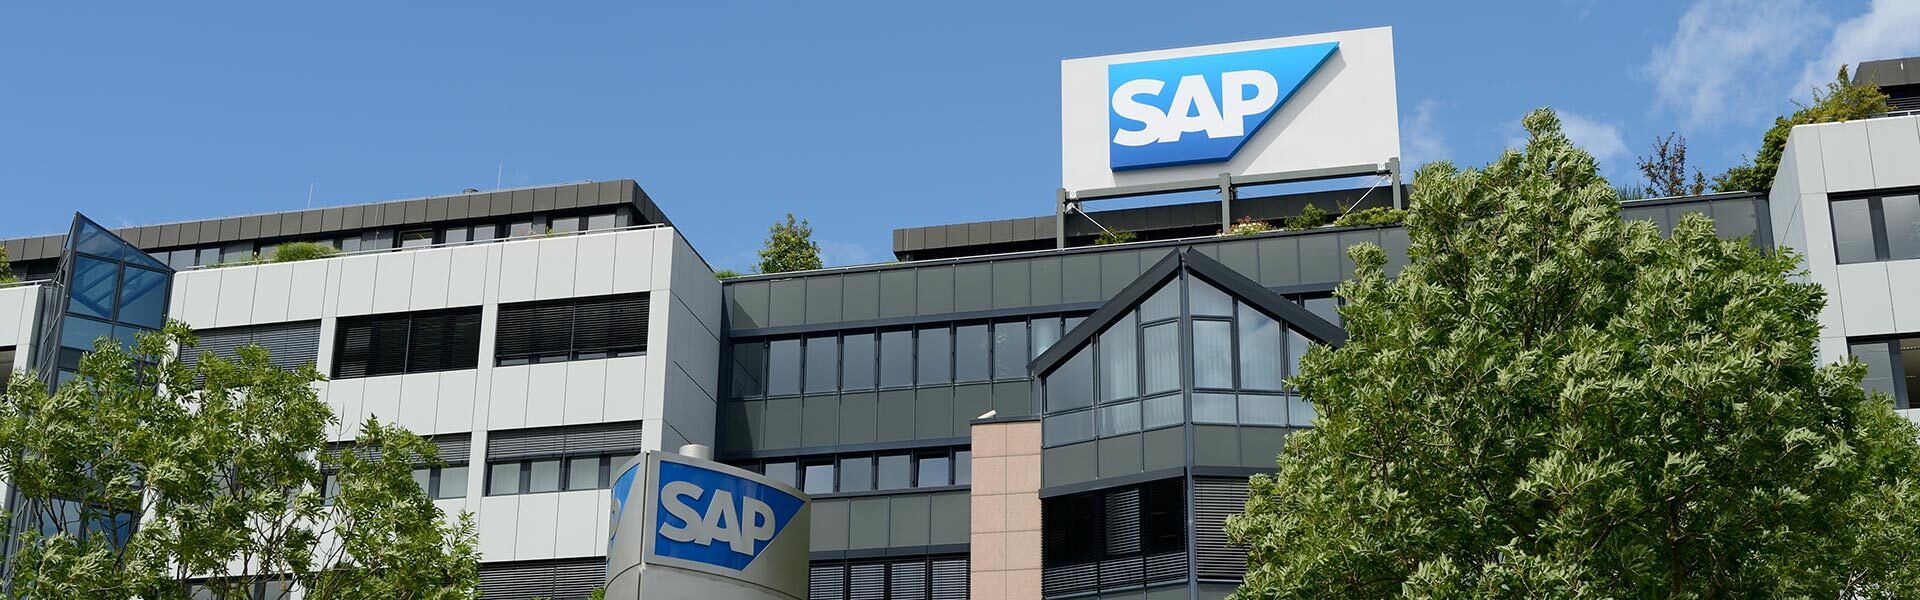 SAP、ガートナー社のマジッククアドラントで 販売実績管理（SPM）分野のリーダーに7年連続で認定